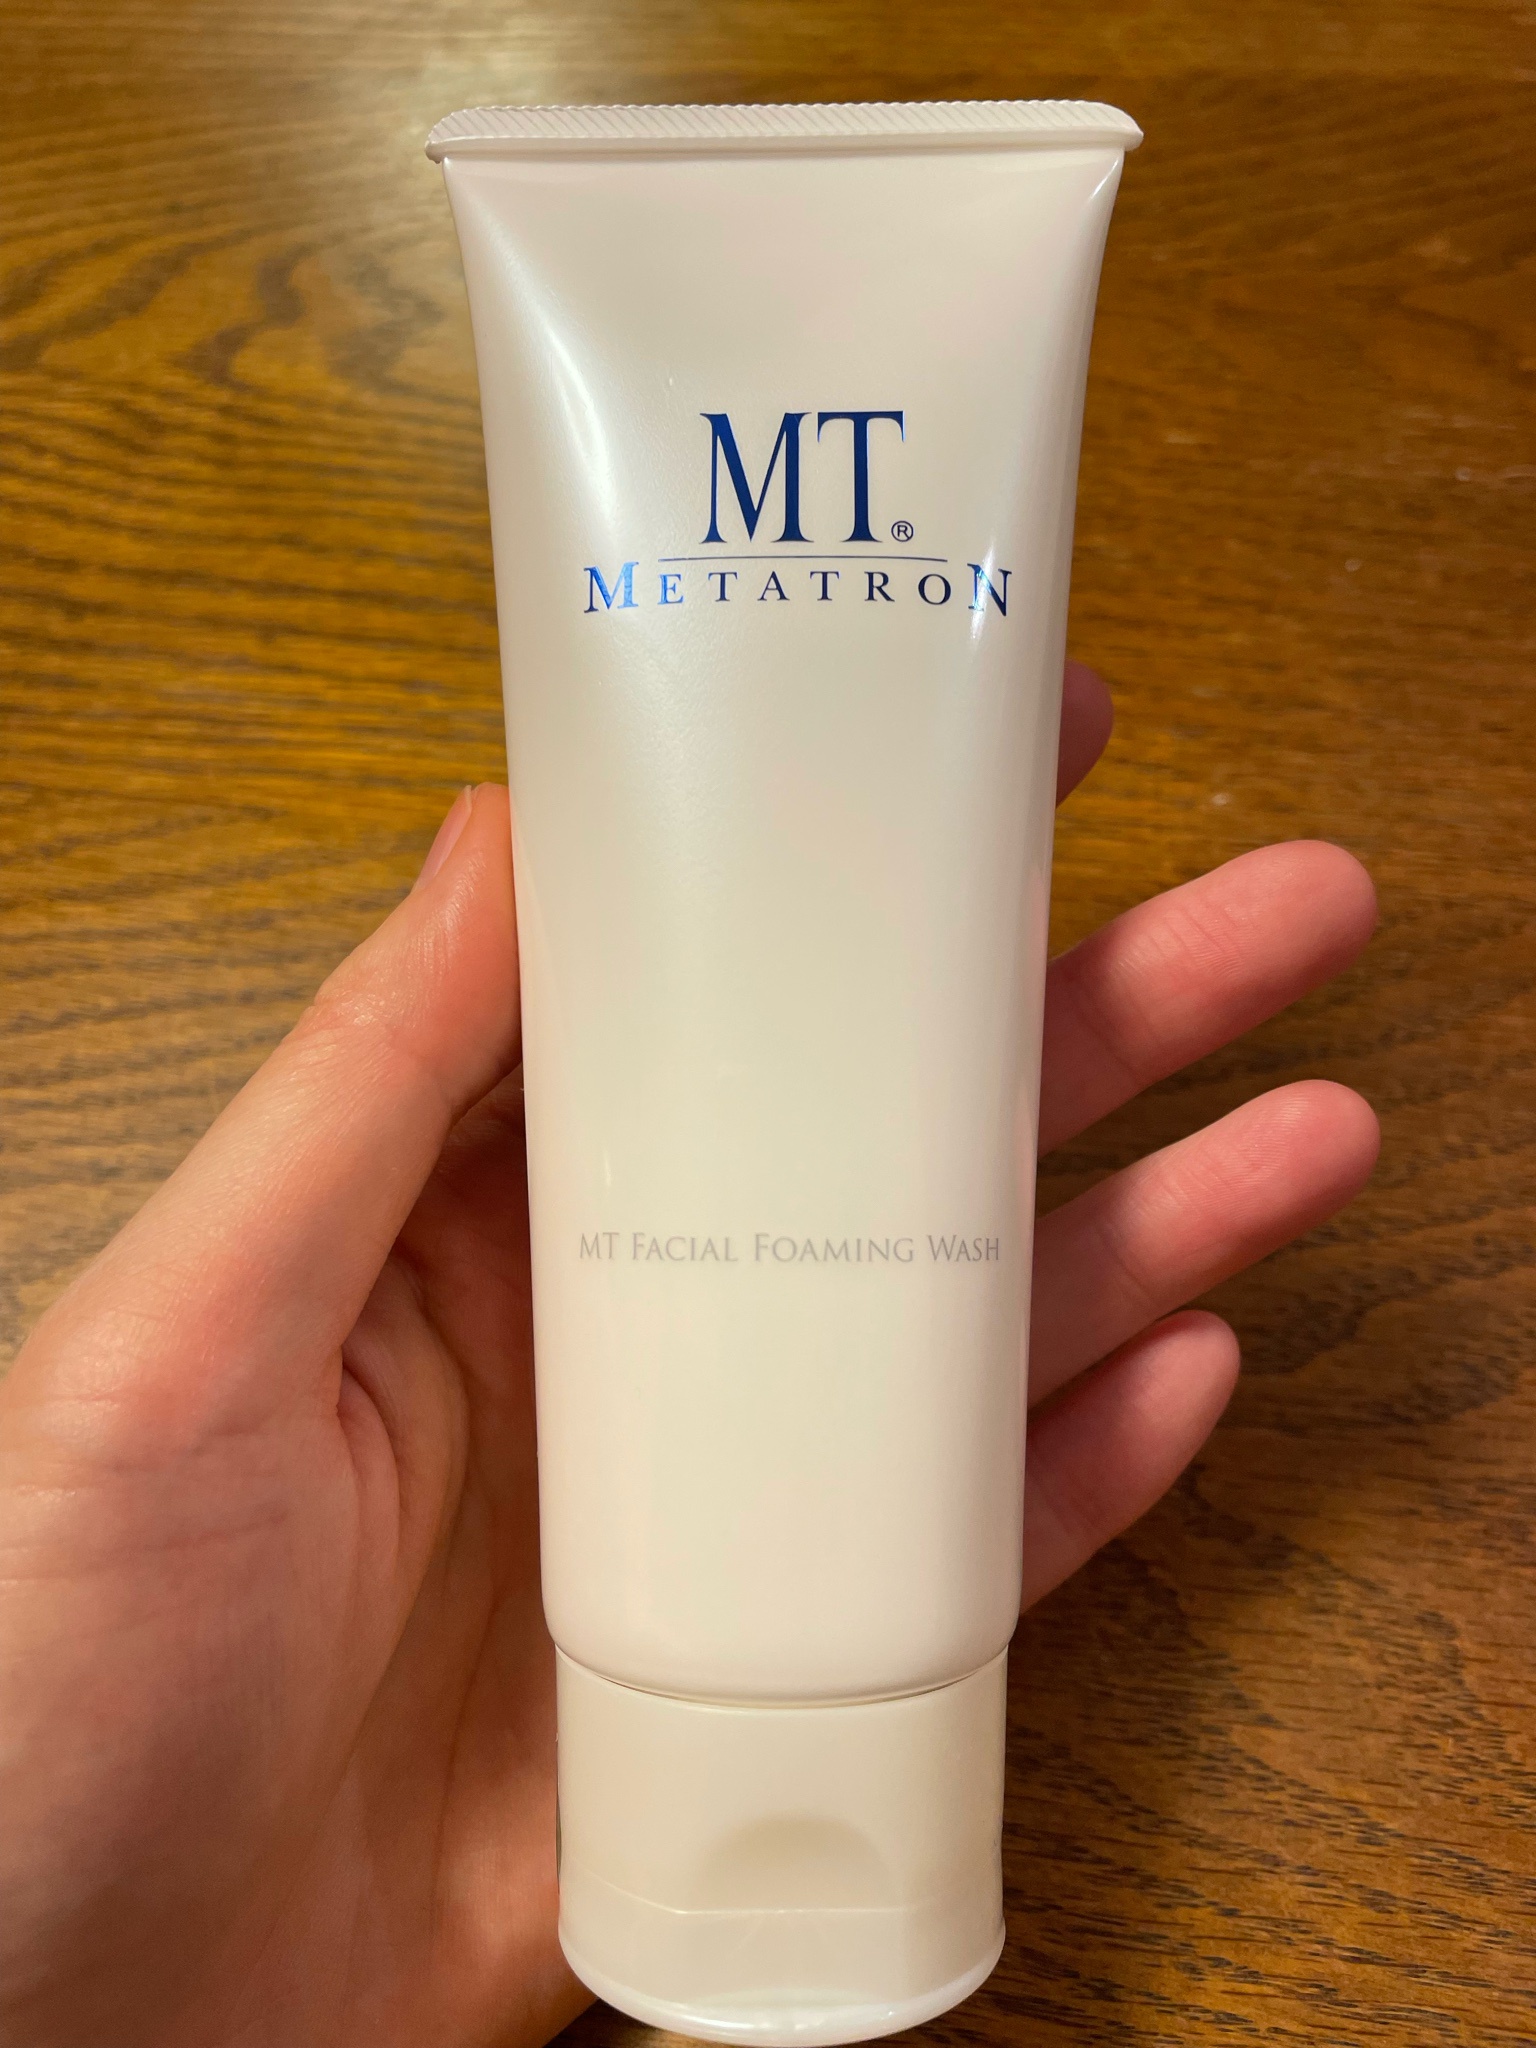 MTメタトロン / MT フェイシャル・フォアミング・ウォッシュの公式商品 